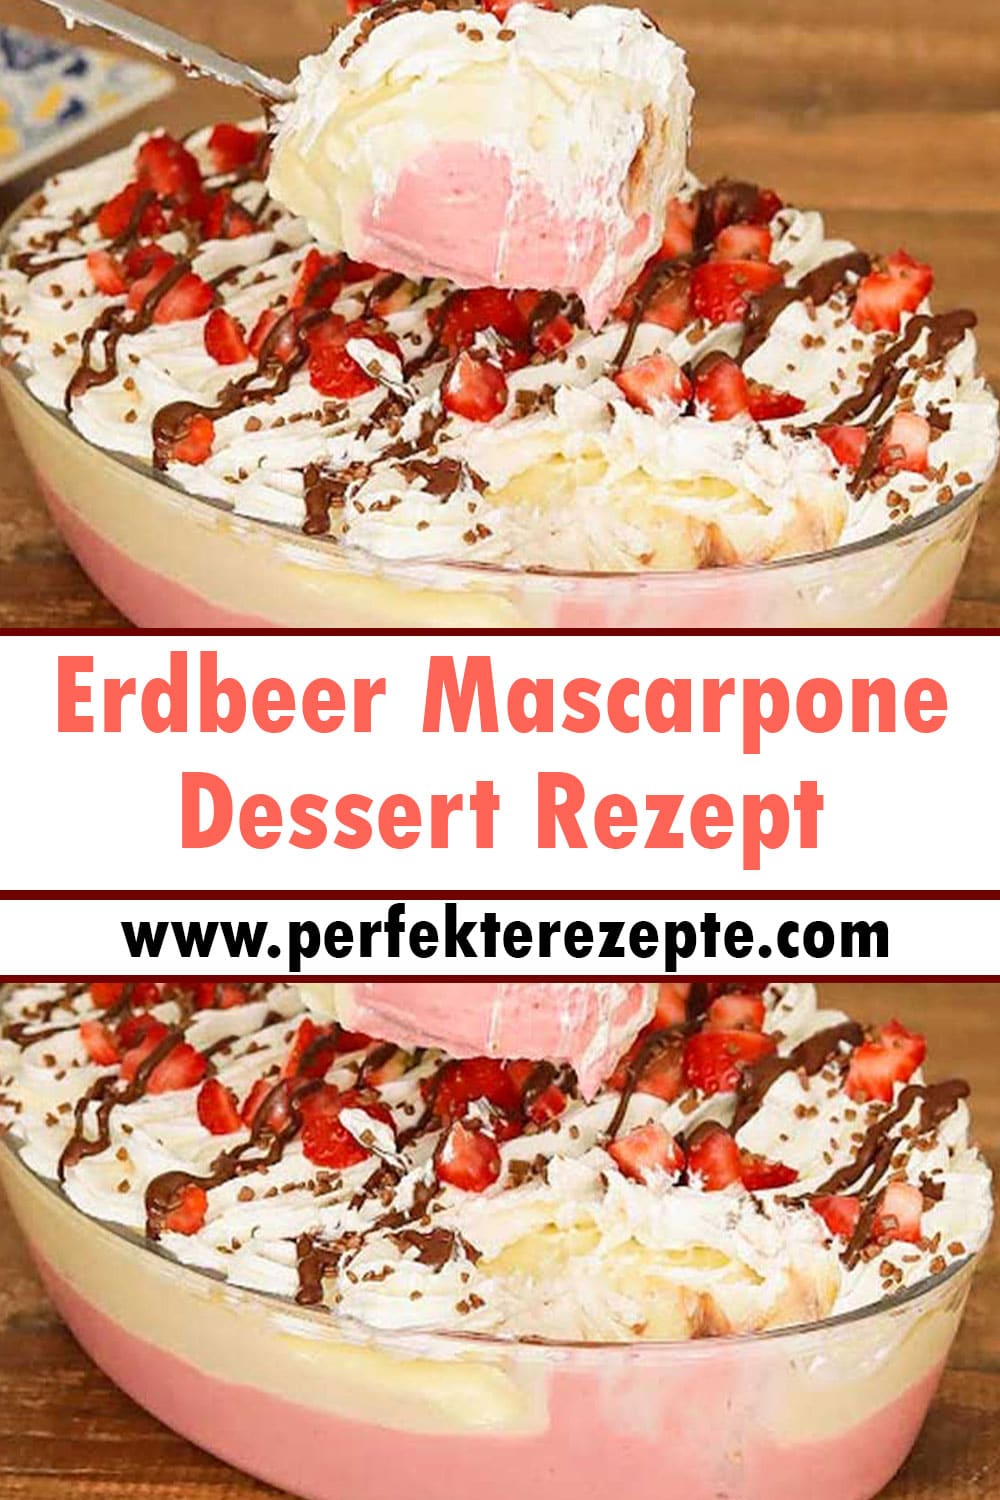 Erdbeer Mascarpone Dessert Rezept